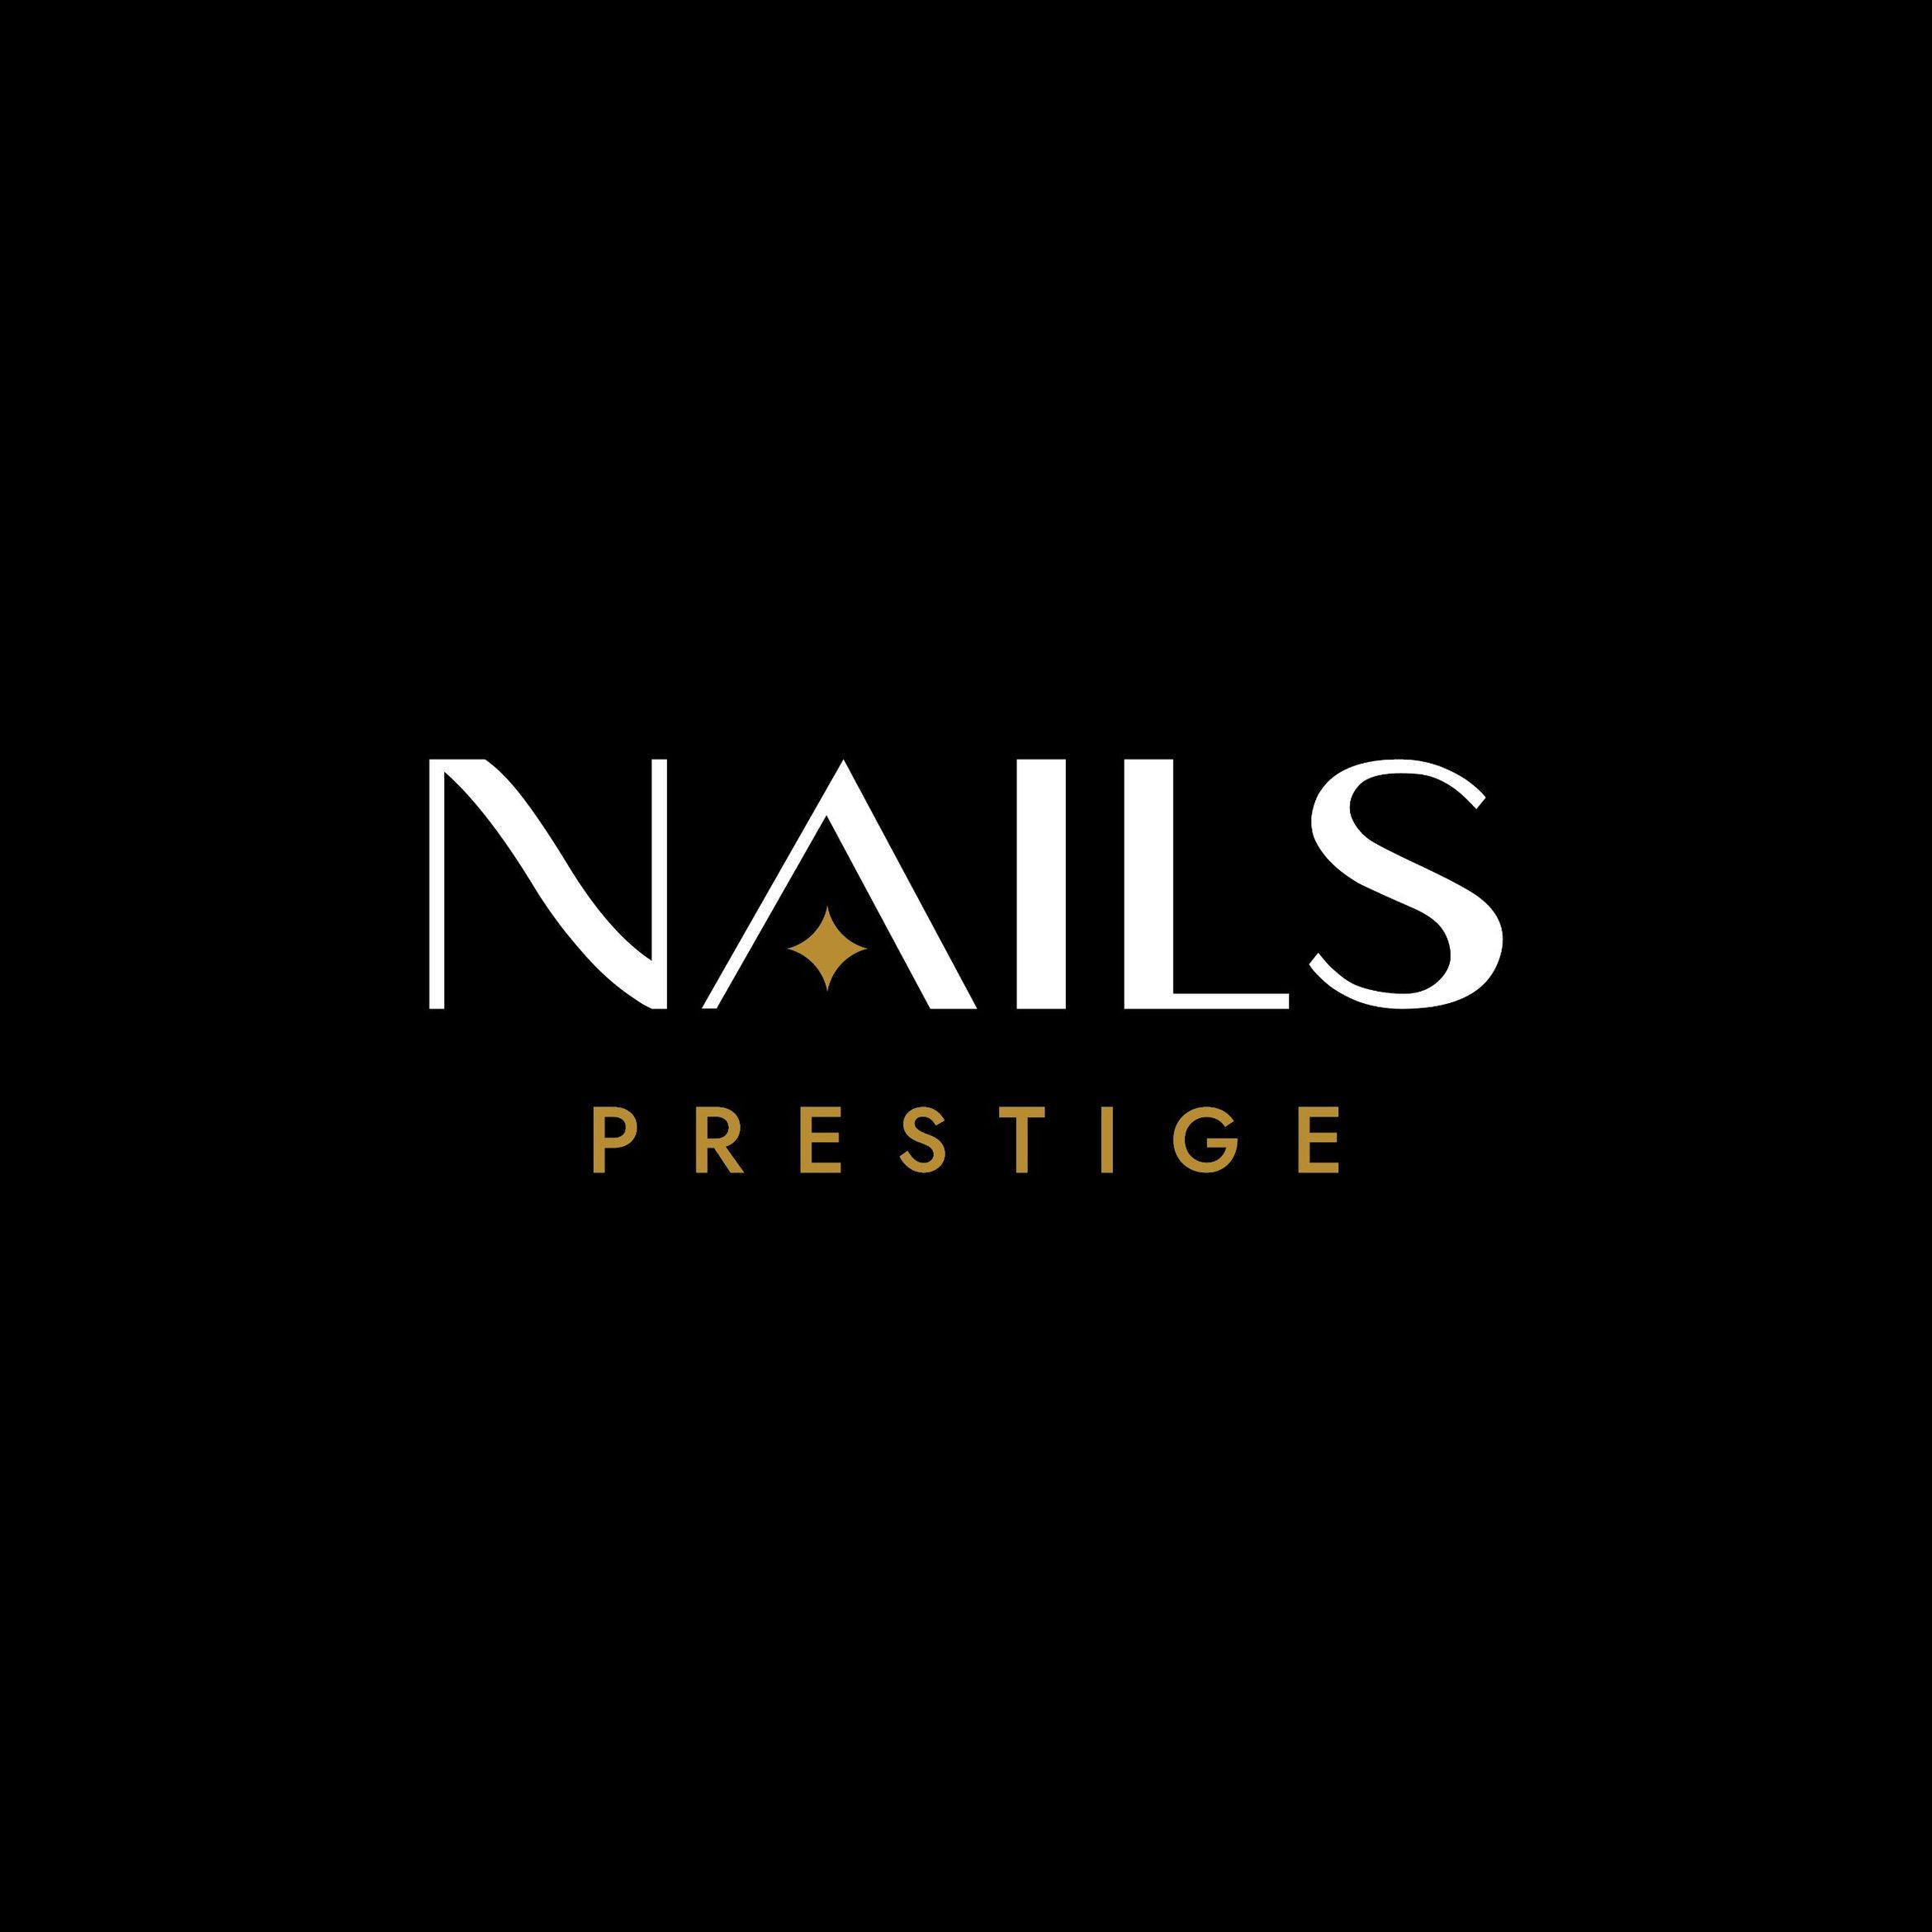 Nails Prestige, 227 Stuyvesant Ave, Suite B, Lyndhurst, 07071